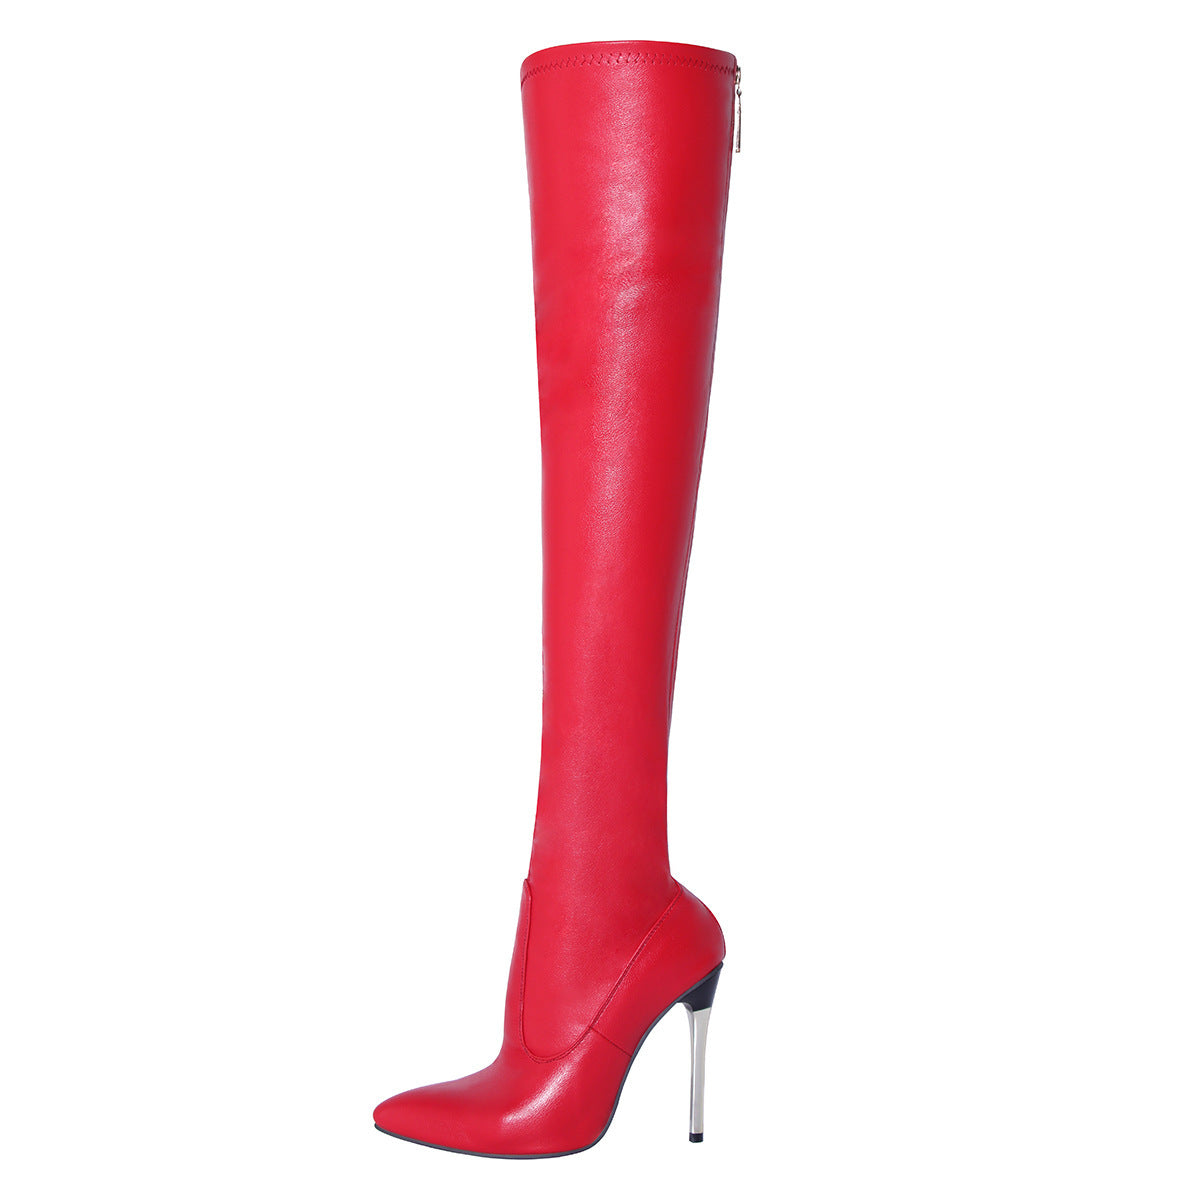 Women's Four Seasons Leg-shaping Overknee Long Boot Boots